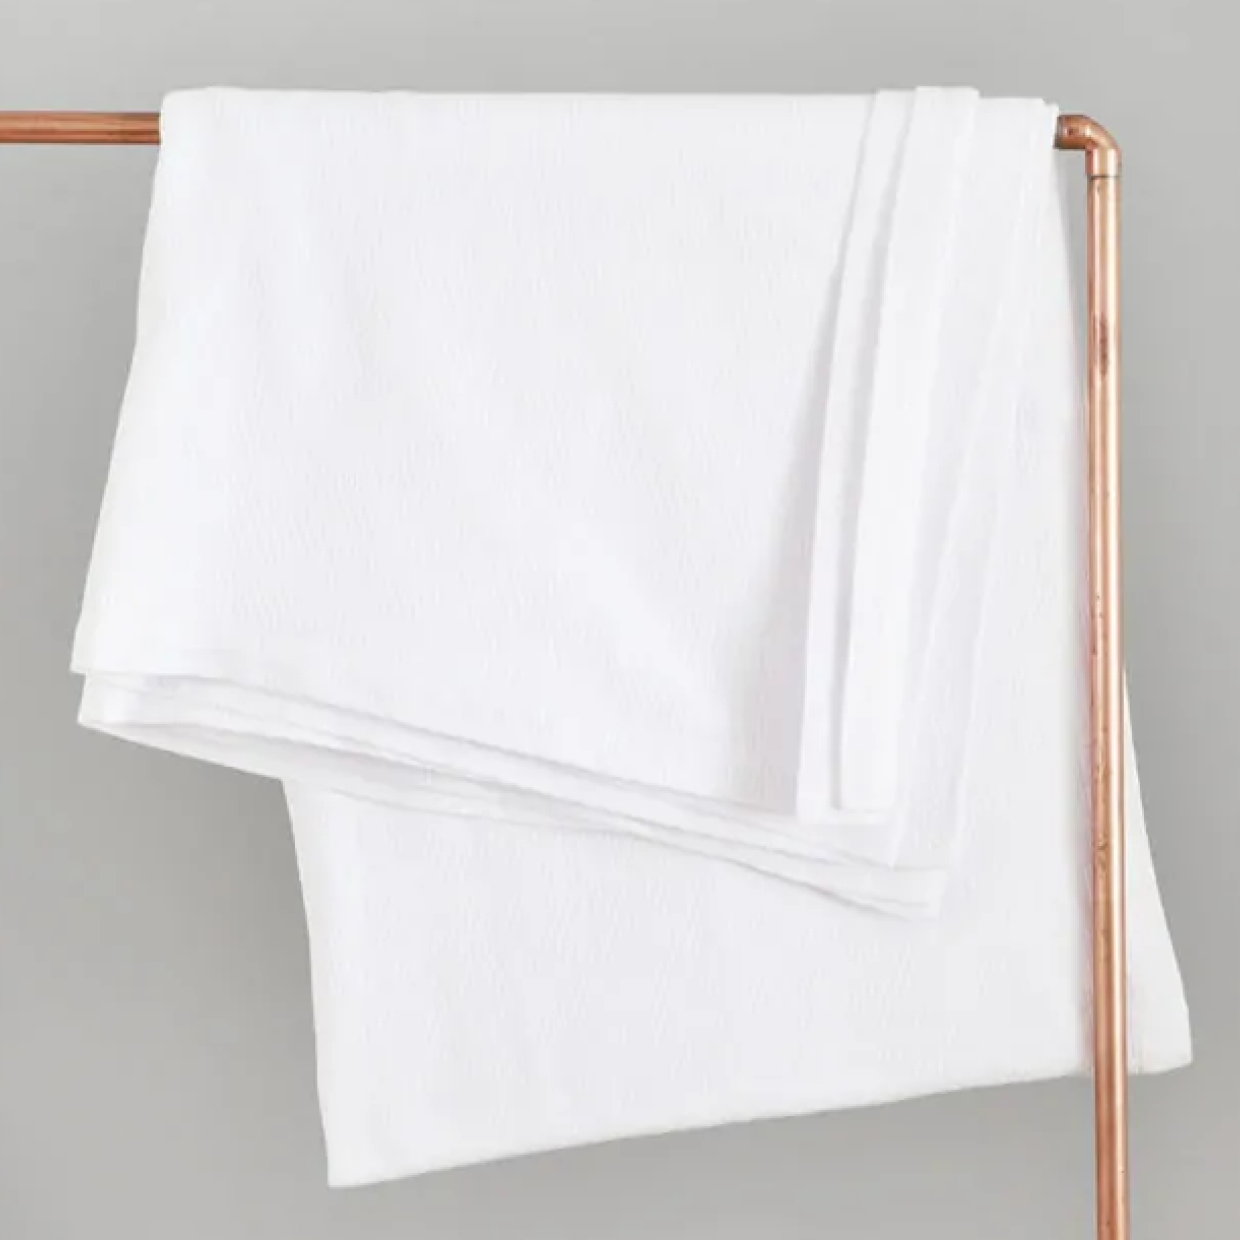 ブランケット(ソファ・ベッド) 150×200cm / Mungo Interlace Blanket